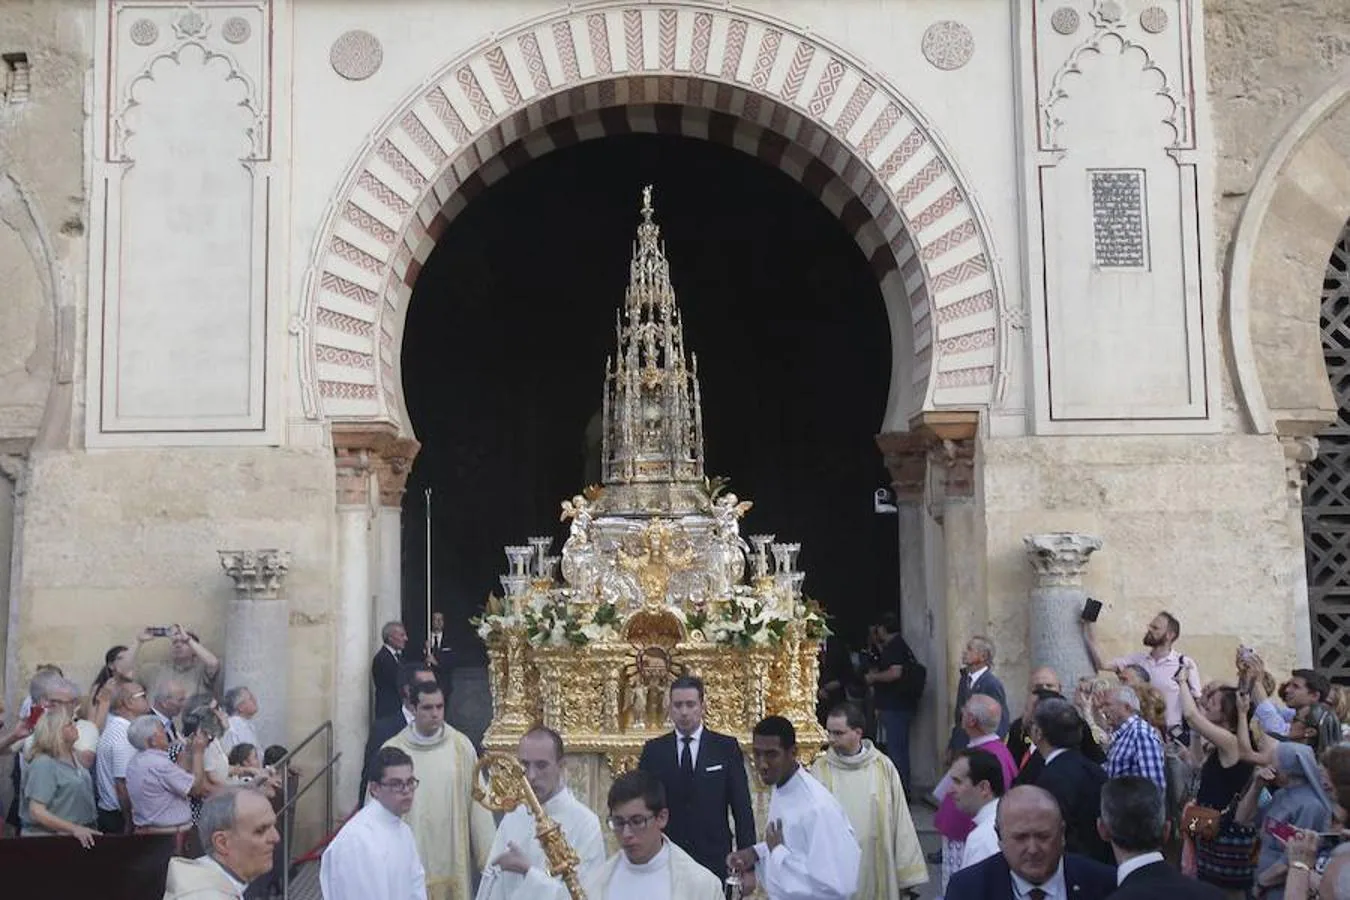 El Corpus Christi irradia de blanco, fe y belleza el entorno de la Mezquita-Catedral de Córdoba